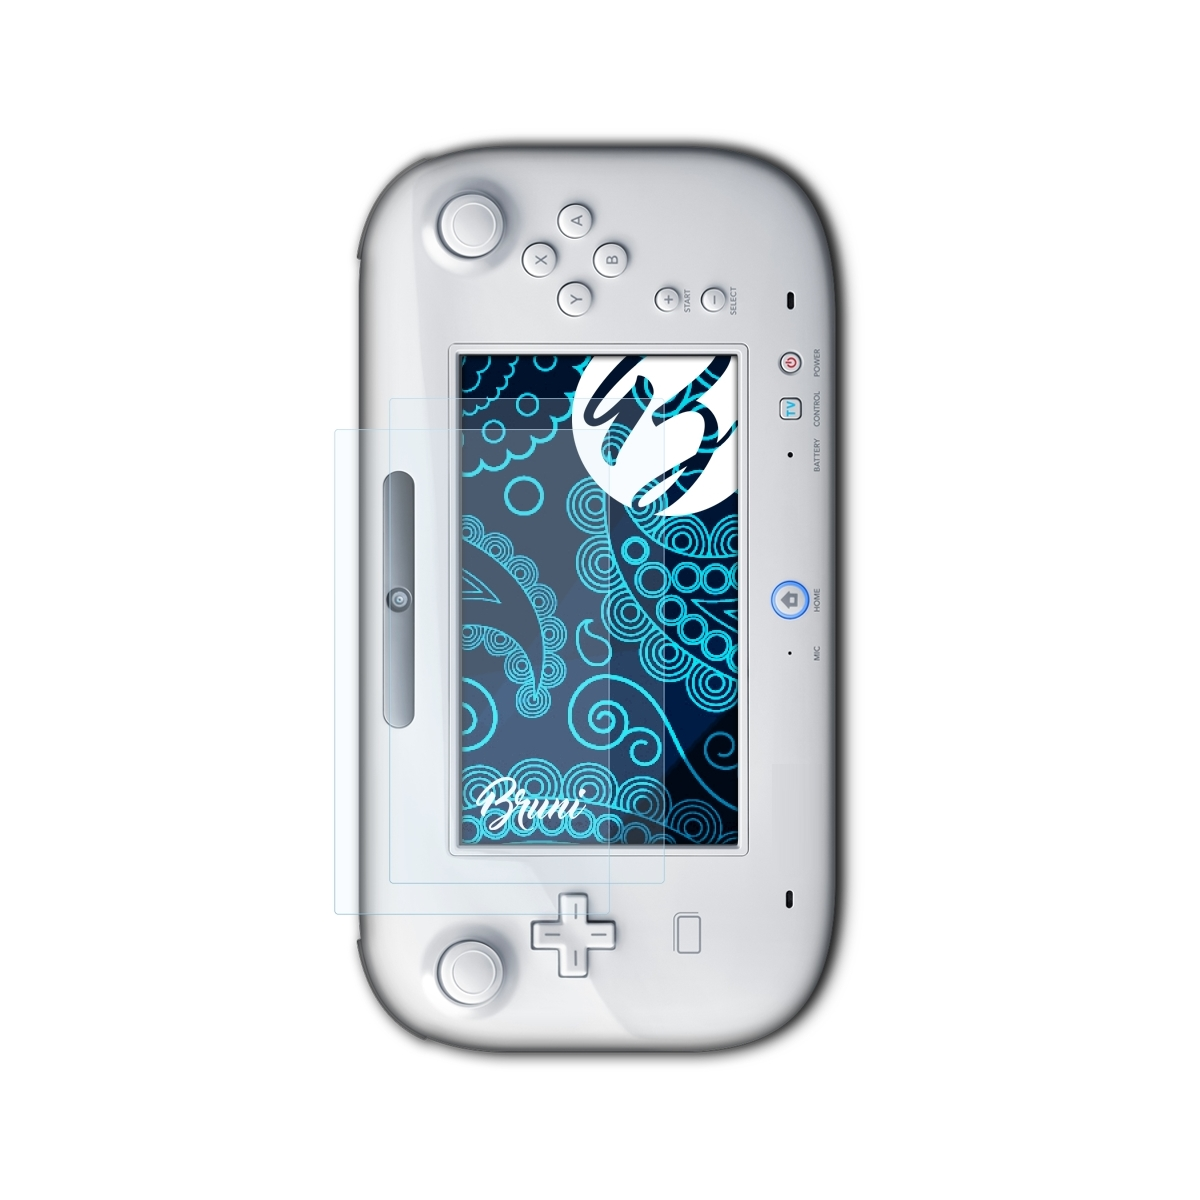 U Basics-Clear GamePad) 2x Schutzfolie(für BRUNI Nintendo Wii